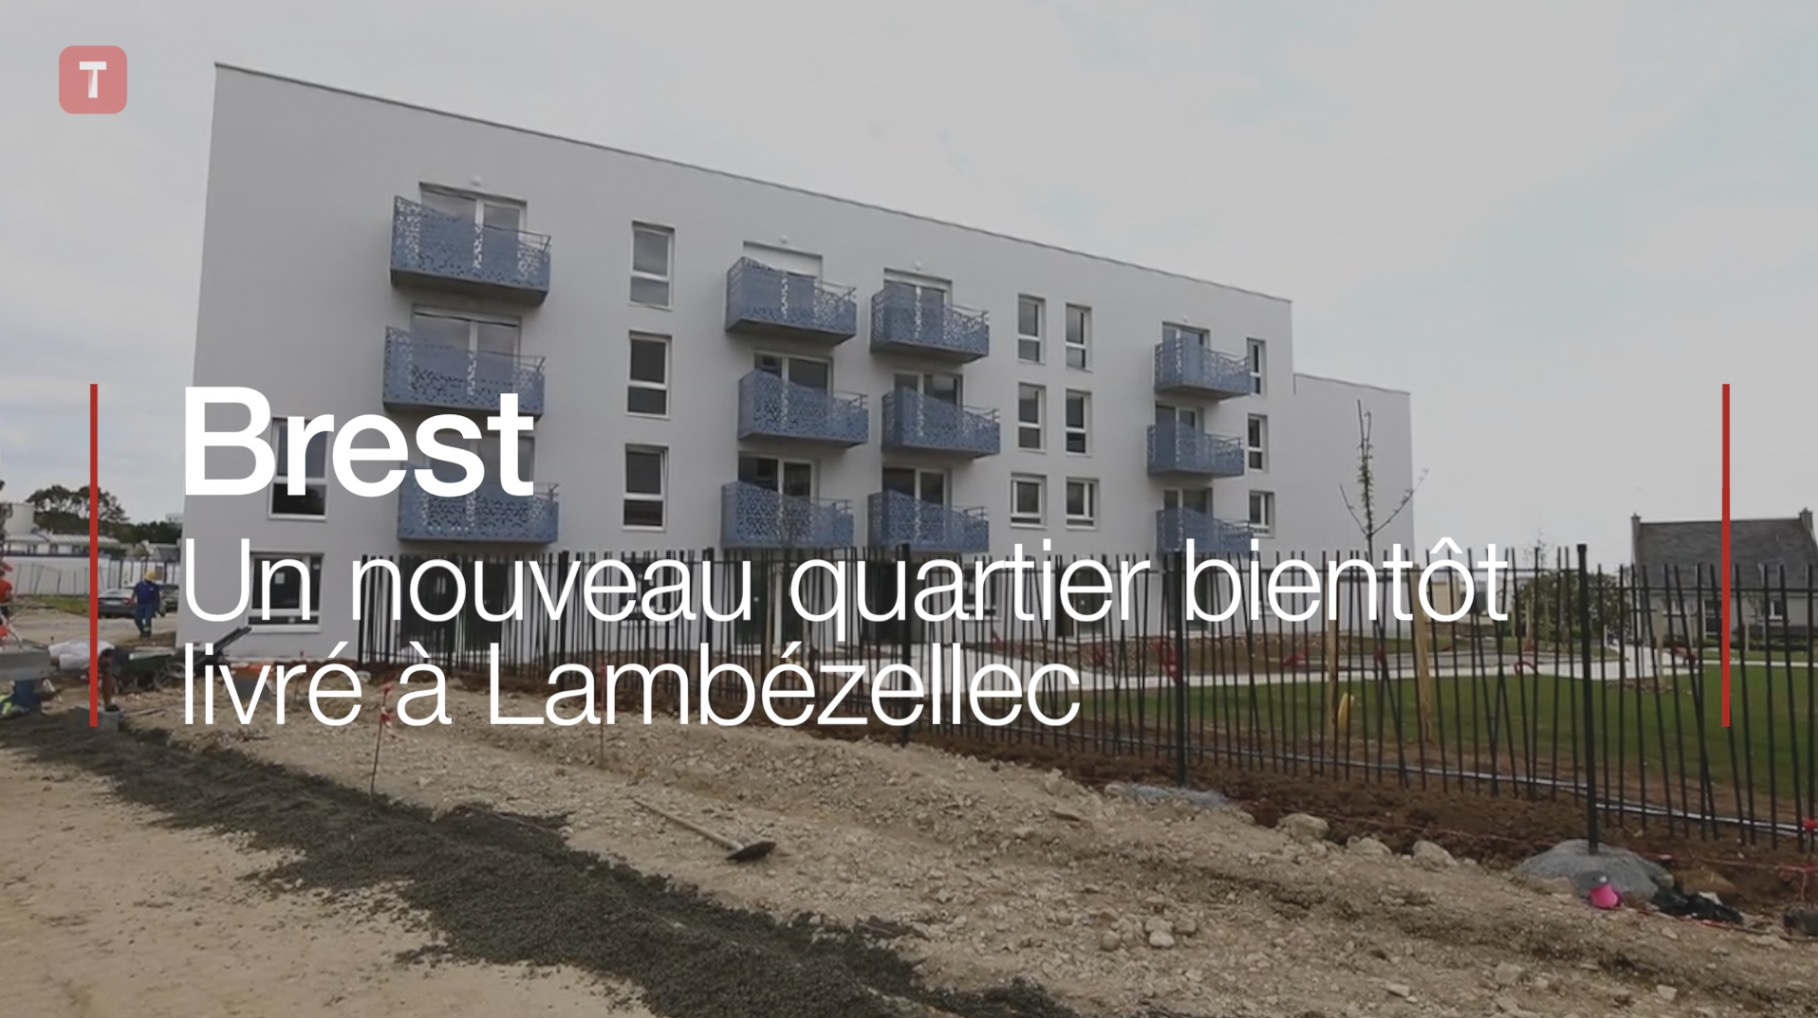 Brest. Un nouveau quartier bientôt livré à Lambézellec (Le Télégramme)